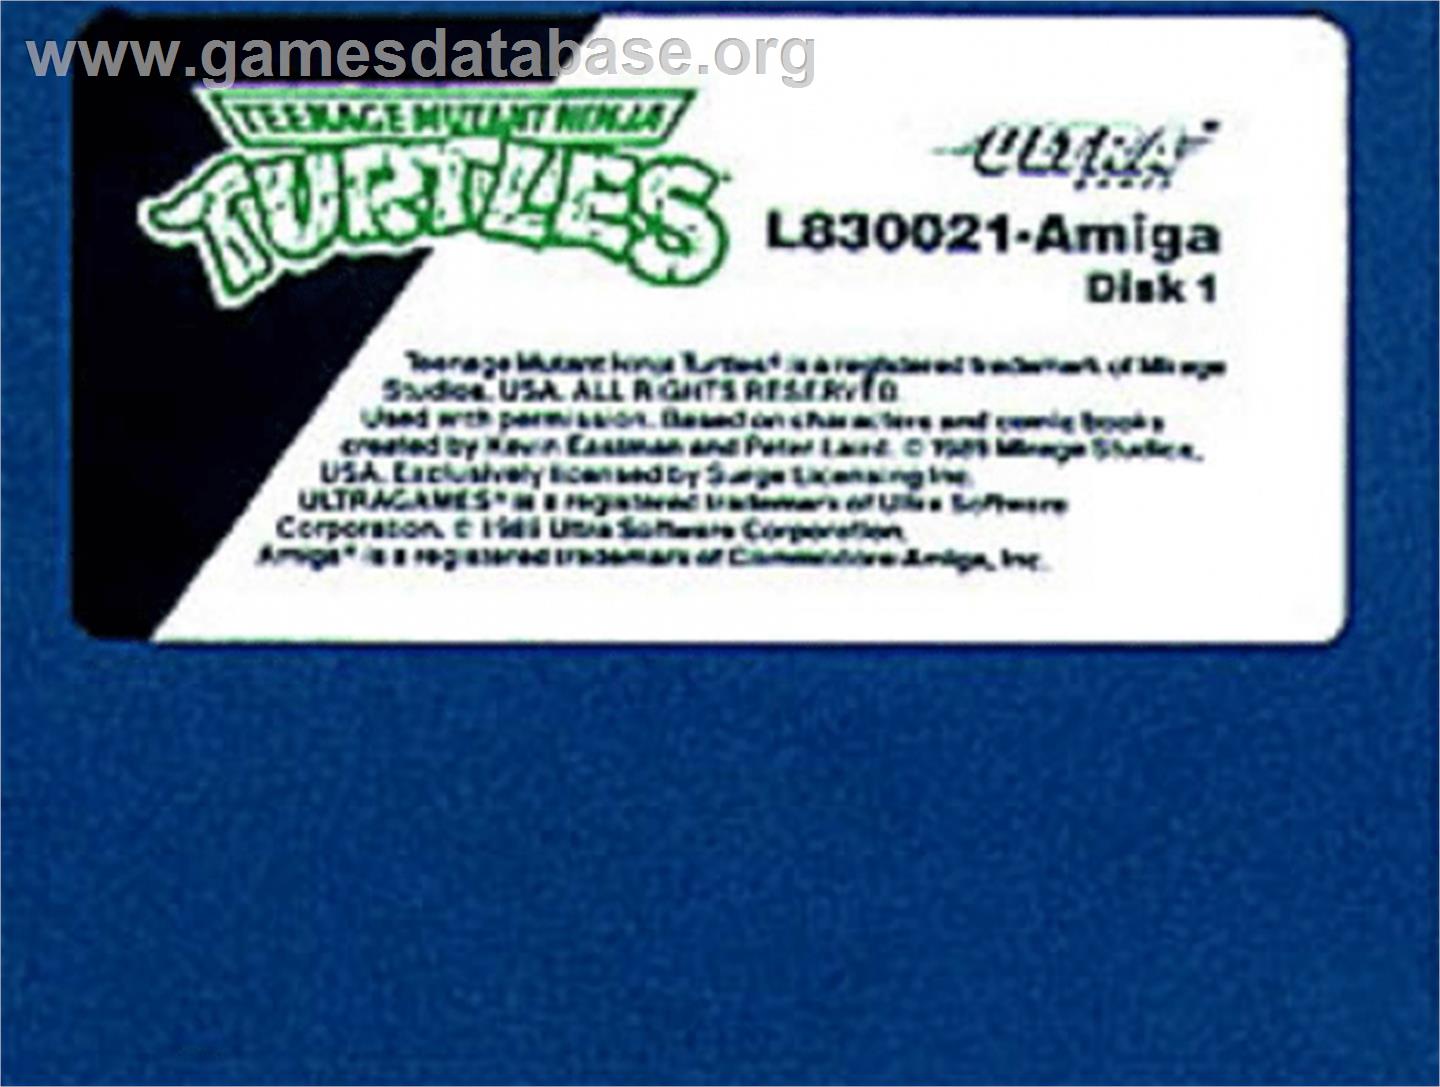 Teenage Mutant Ninja Turtles - Commodore Amiga - Artwork - Cartridge Top